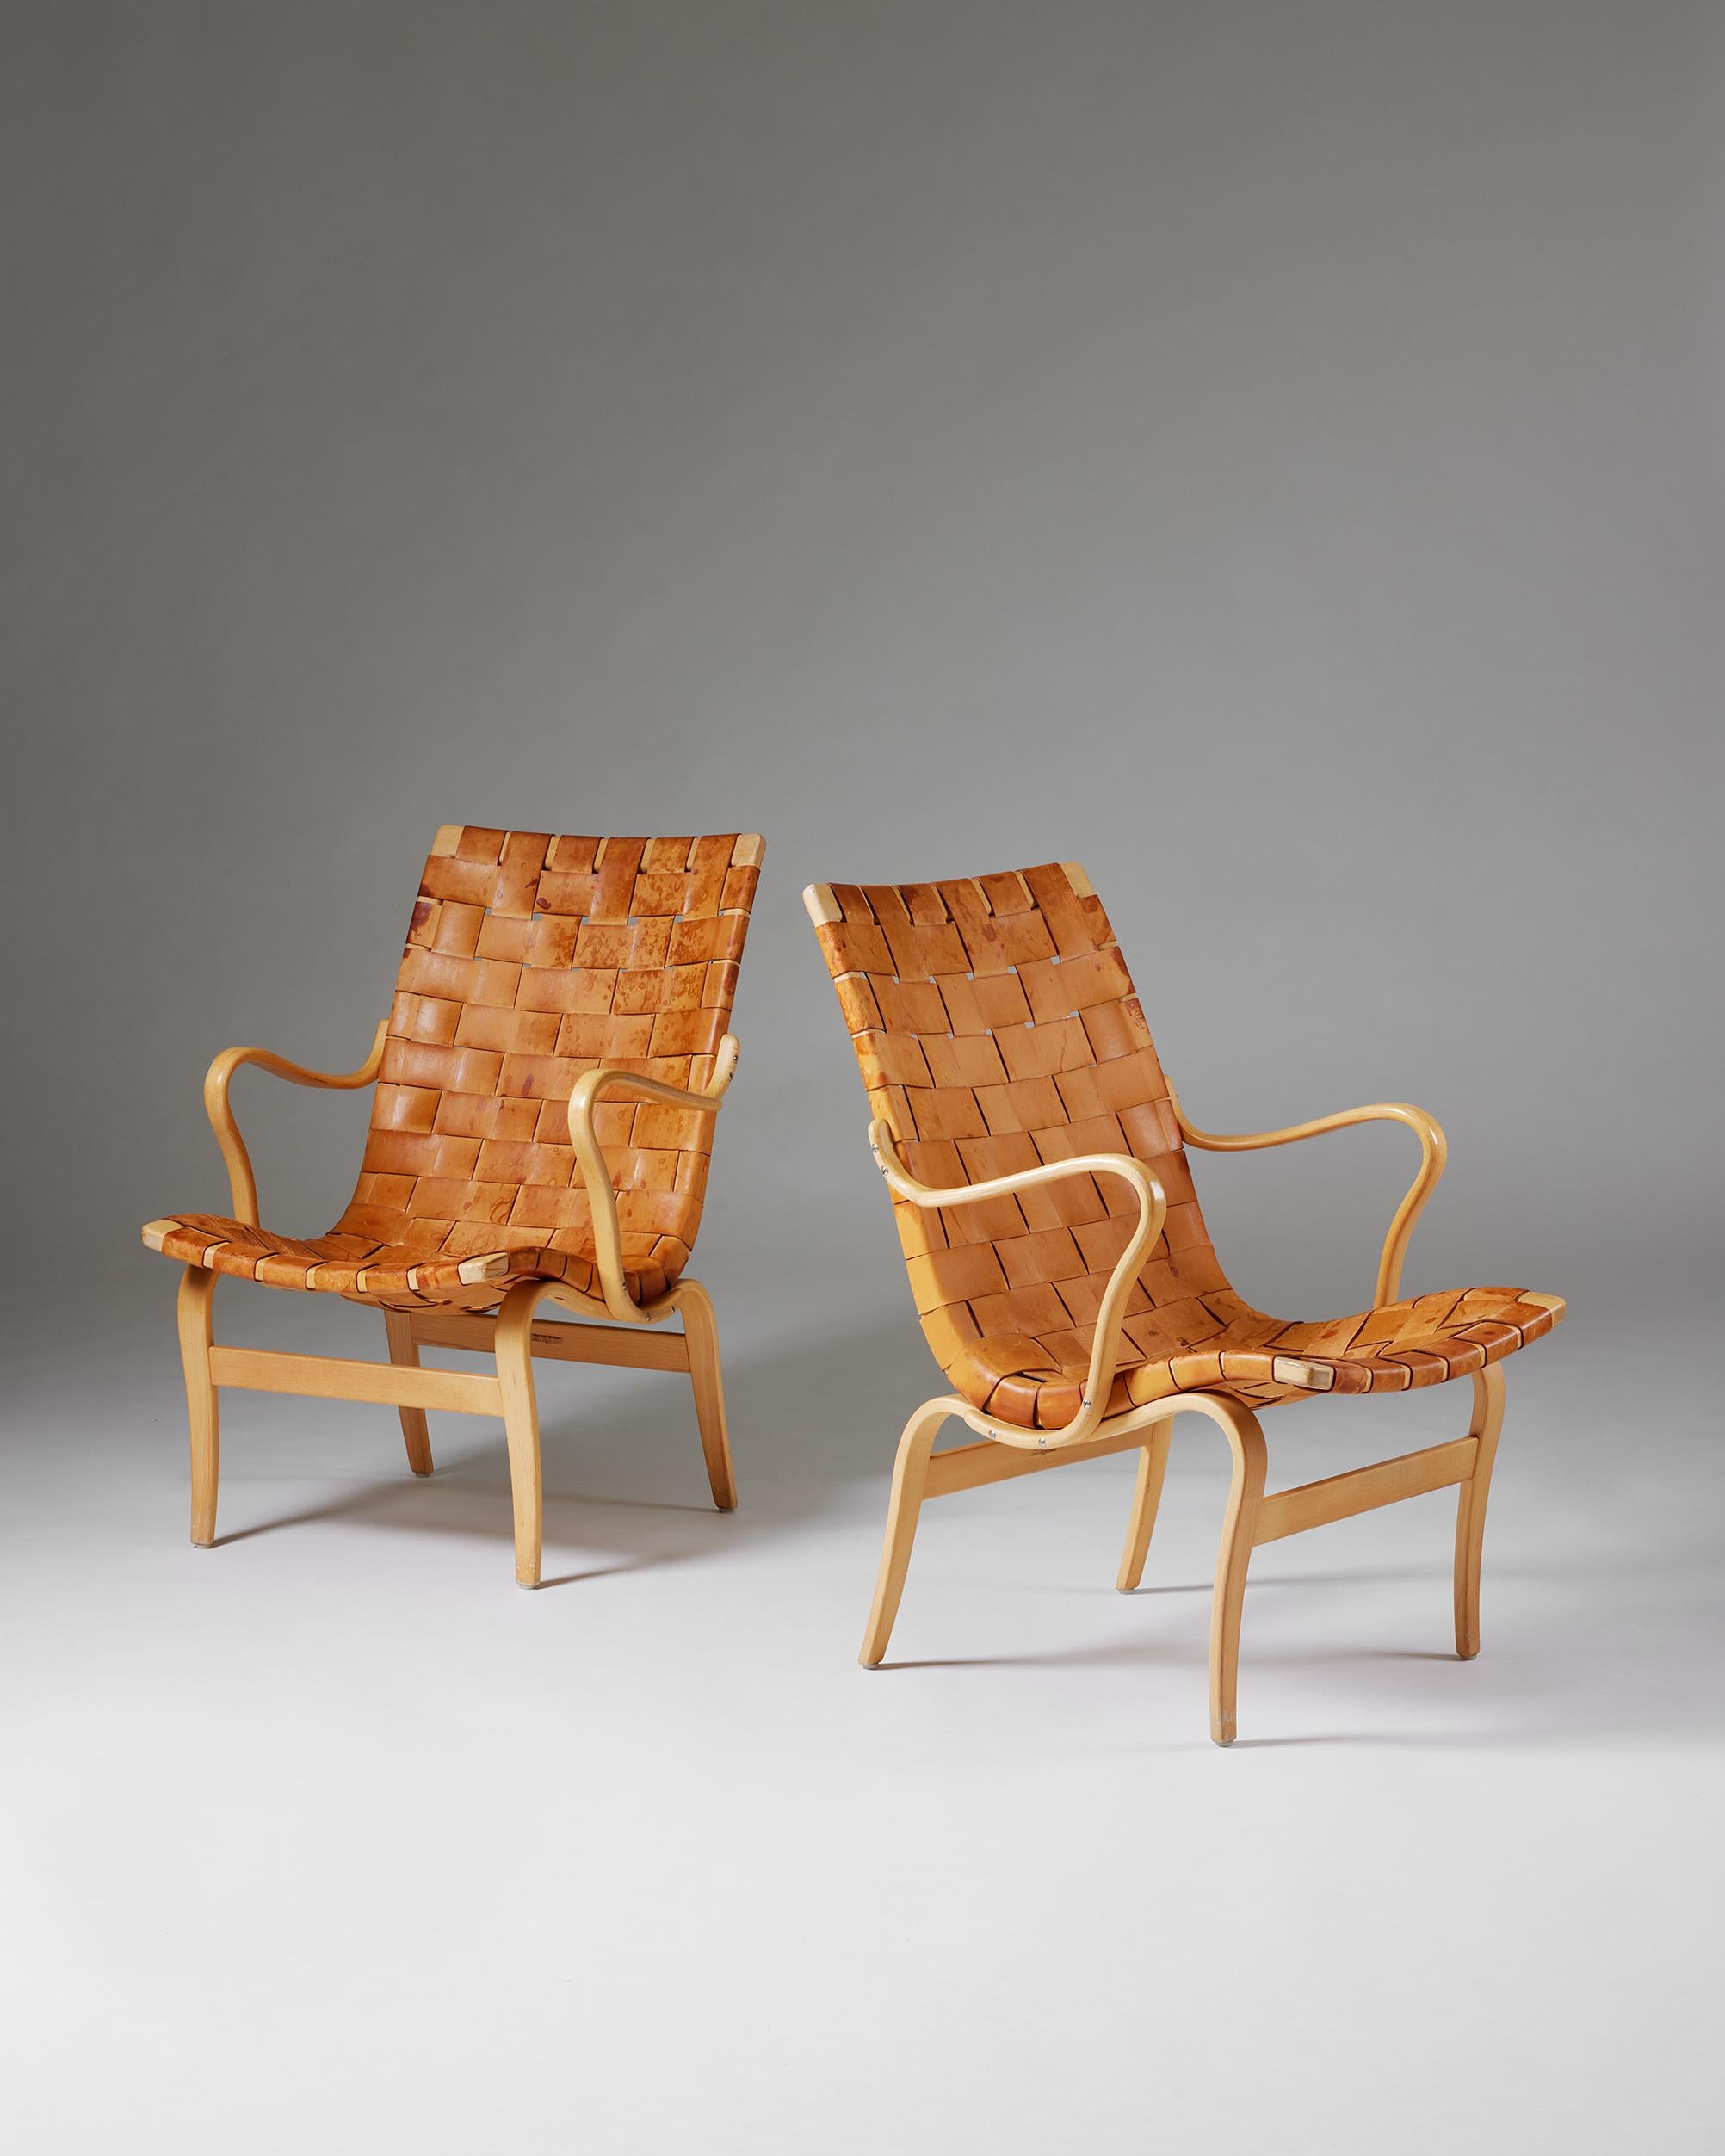 Paar Sessel 'Eva', entworfen von Bruno Mathsson für Karl Mathsson,
Schweden, 1964.

Leder und Birke.

Gestempelt.

Mit seinen charakteristisch geschwungenen Beinen und Armlehnen ist das ikonische Stuhlmodell 